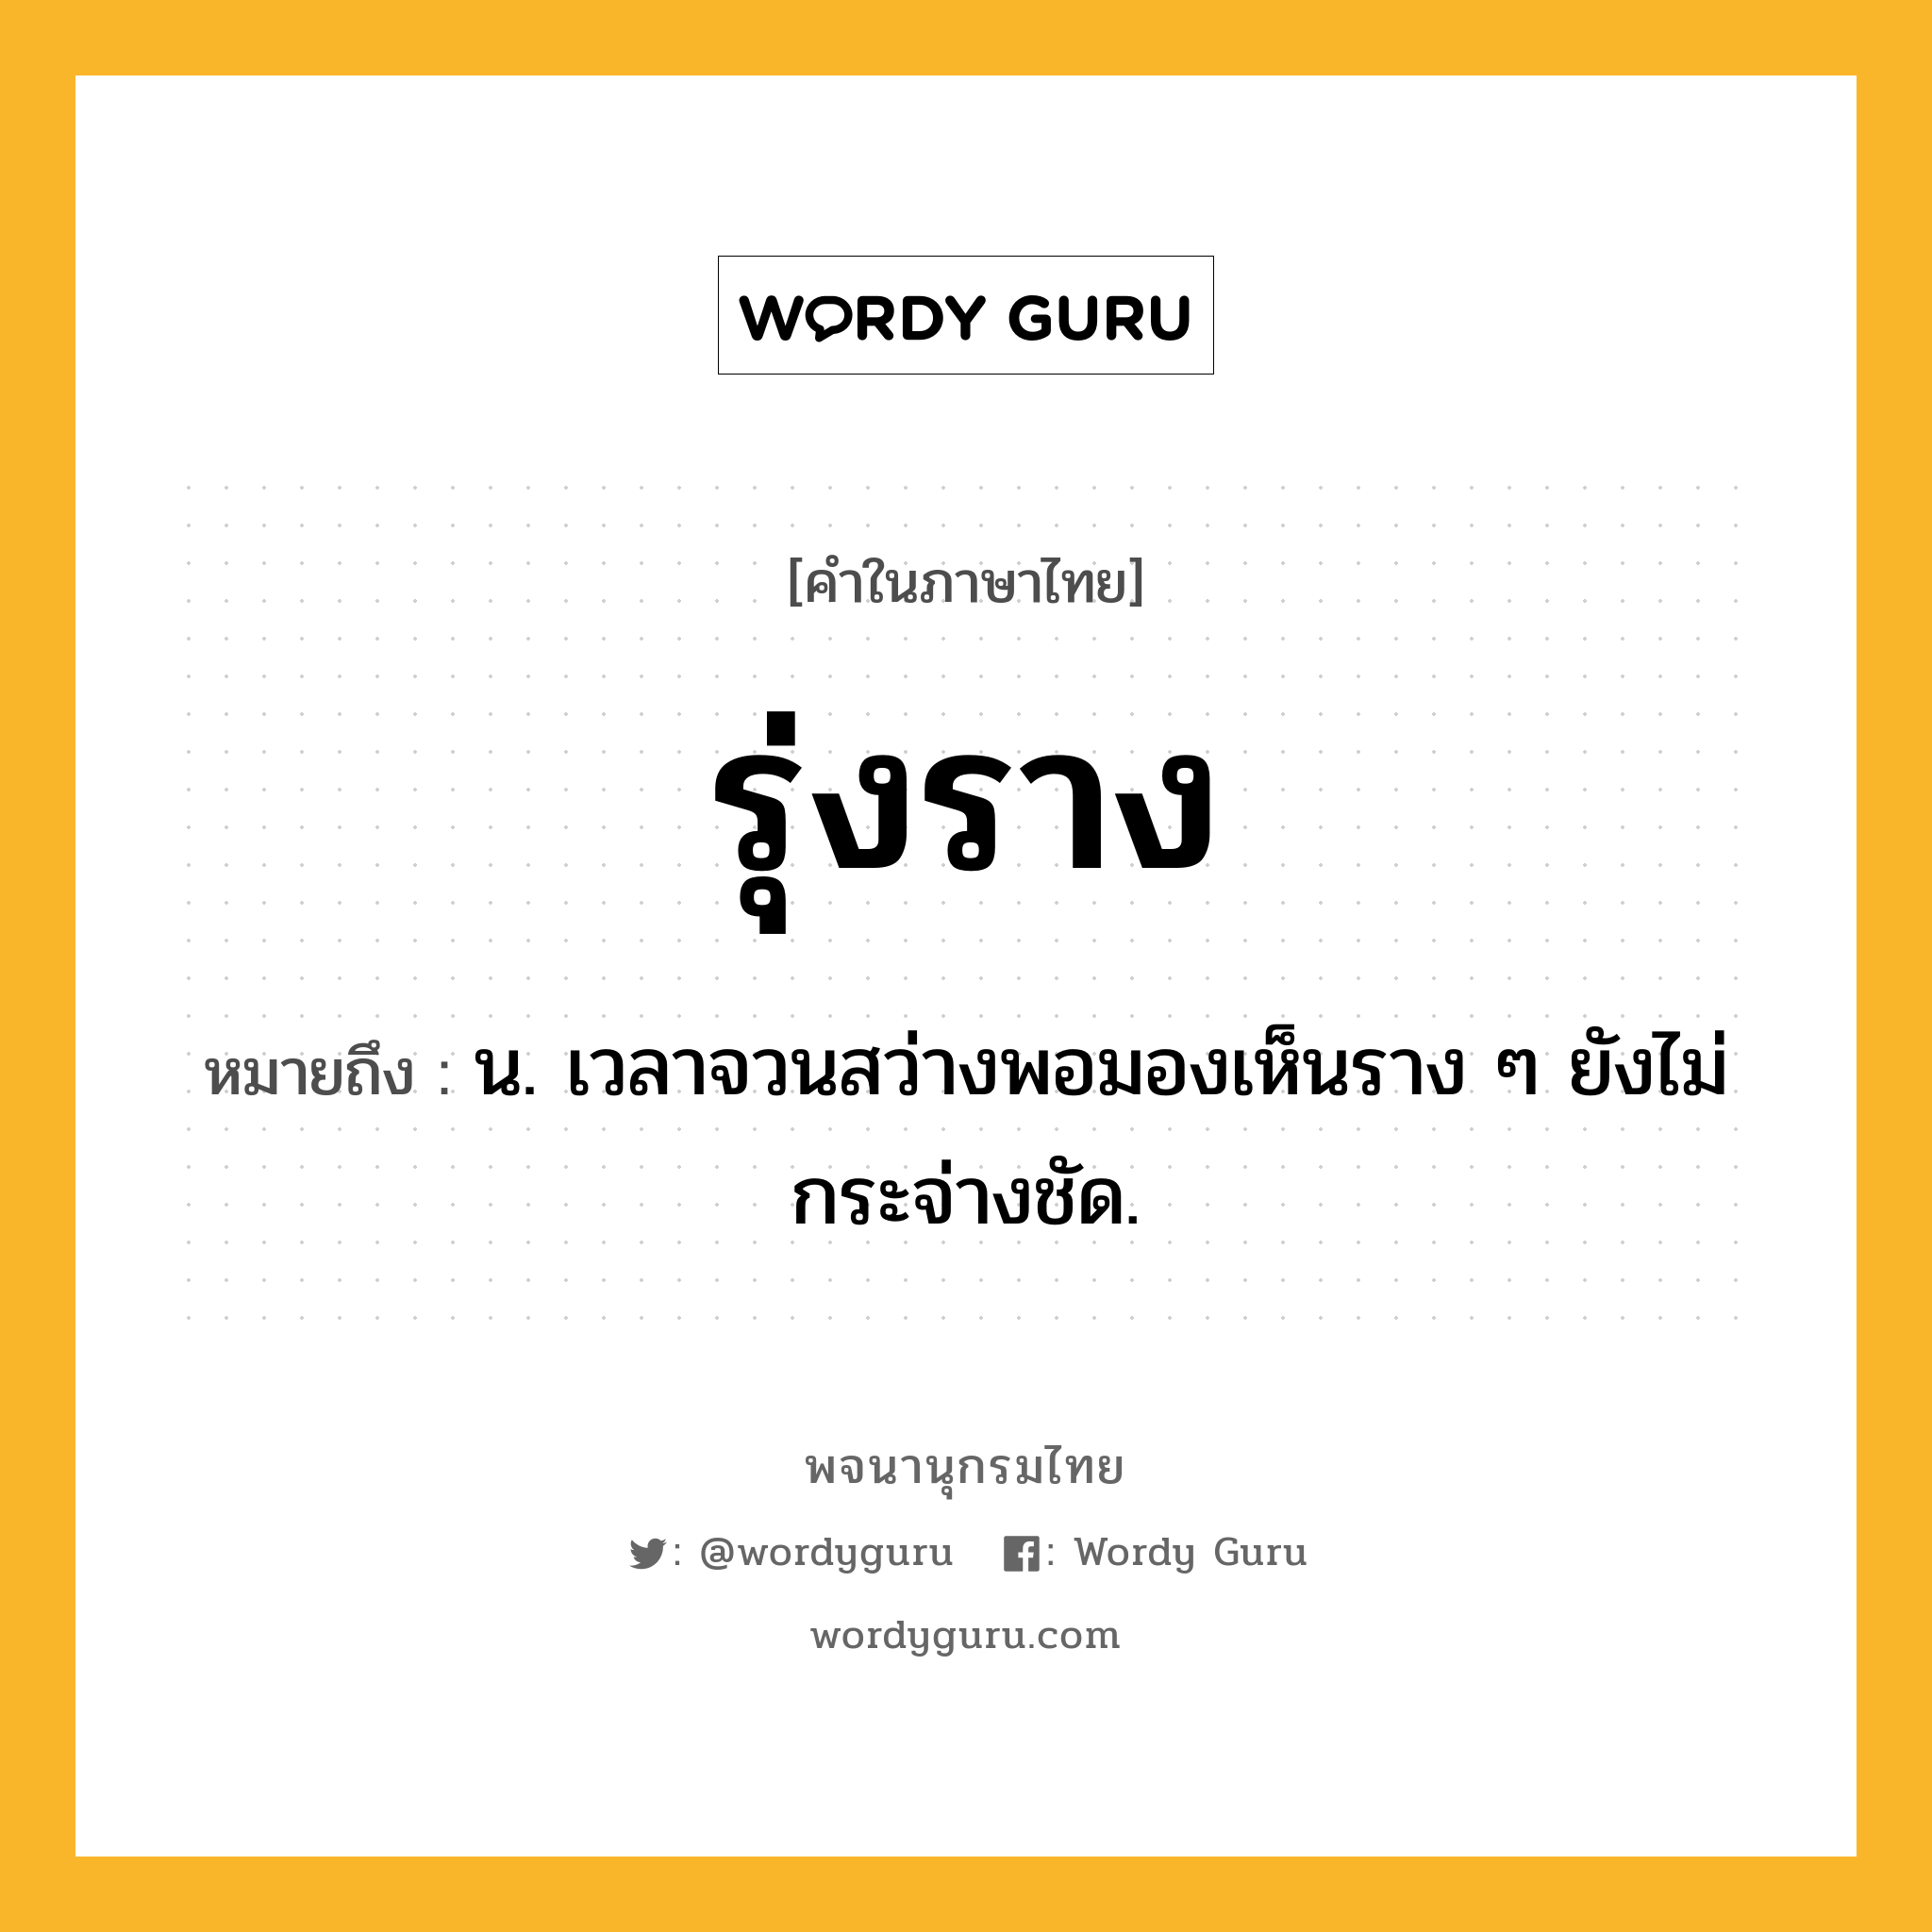 รุ่งราง หมายถึงอะไร?, คำในภาษาไทย รุ่งราง หมายถึง น. เวลาจวนสว่างพอมองเห็นราง ๆ ยังไม่กระจ่างชัด.